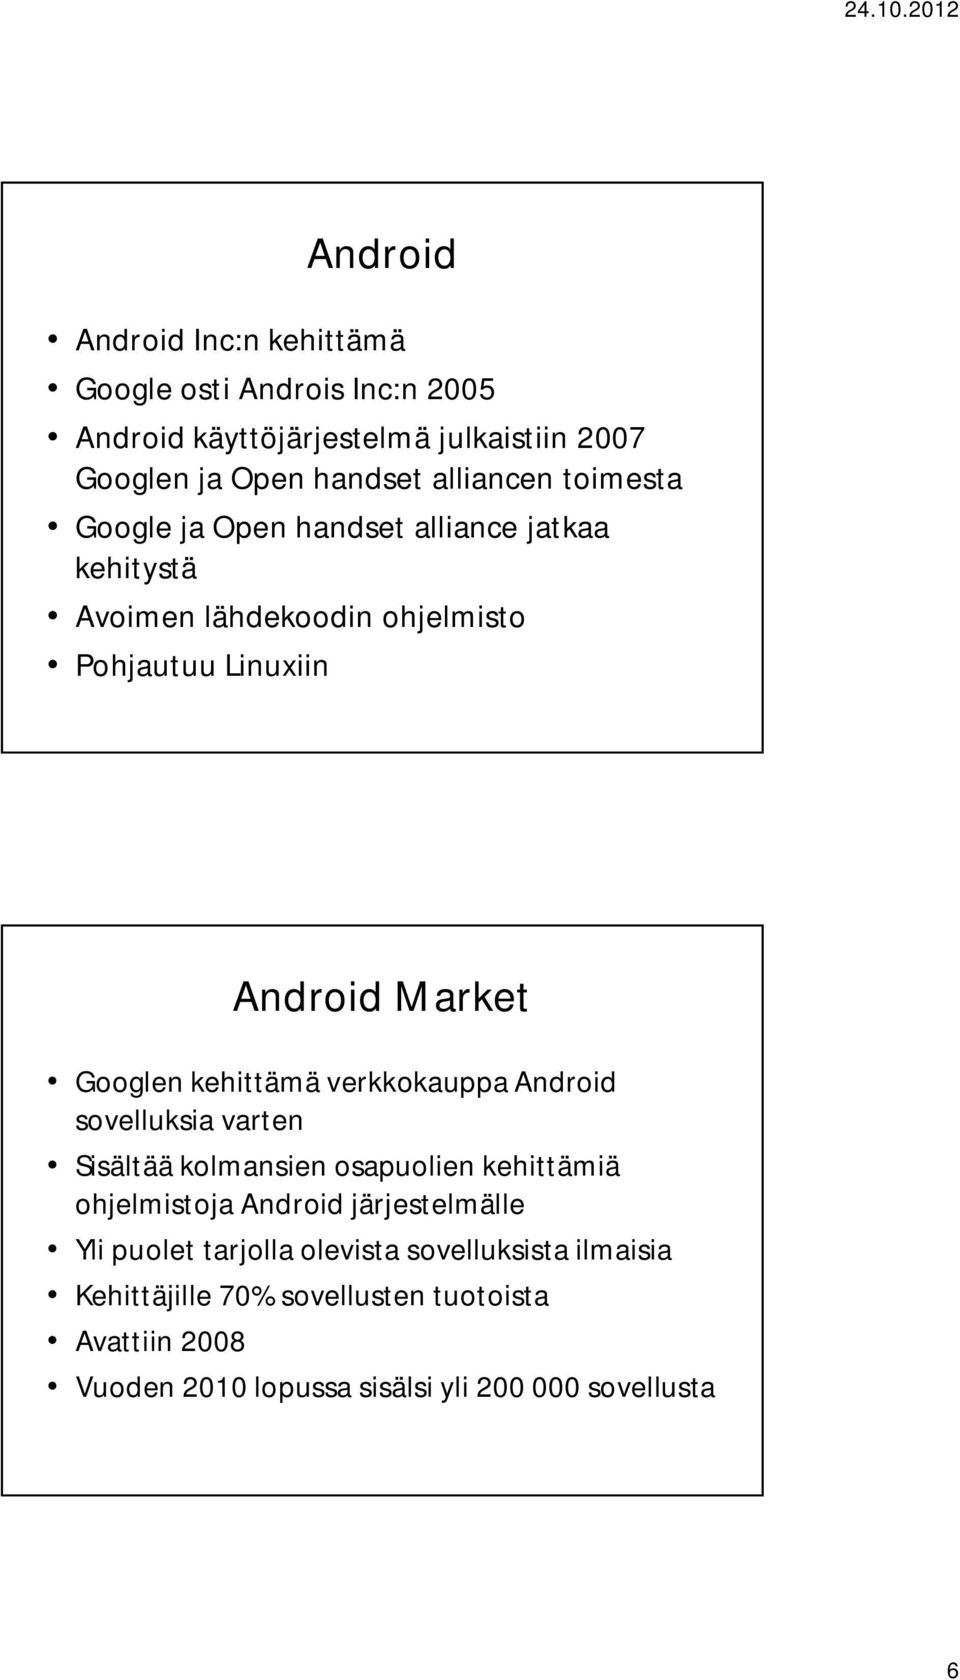 Googlen kehittämä verkkokauppa Android sovelluksia varten Sisältää kolmansien osapuolien kehittämiä ohjelmistoja Android järjestelmälle